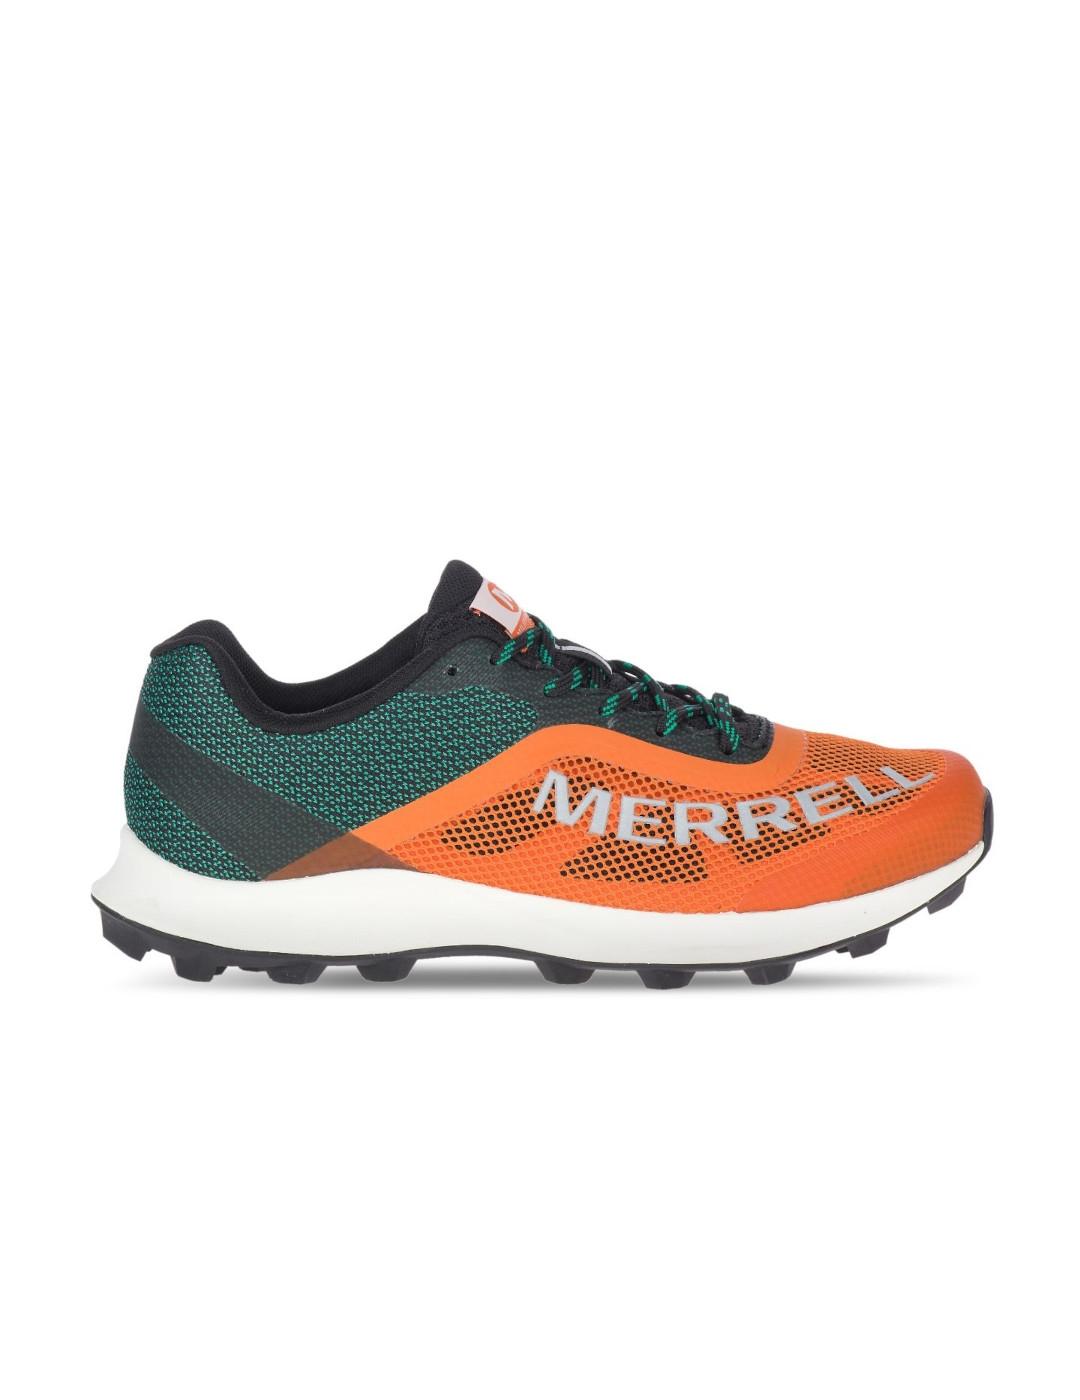 Merrell - 